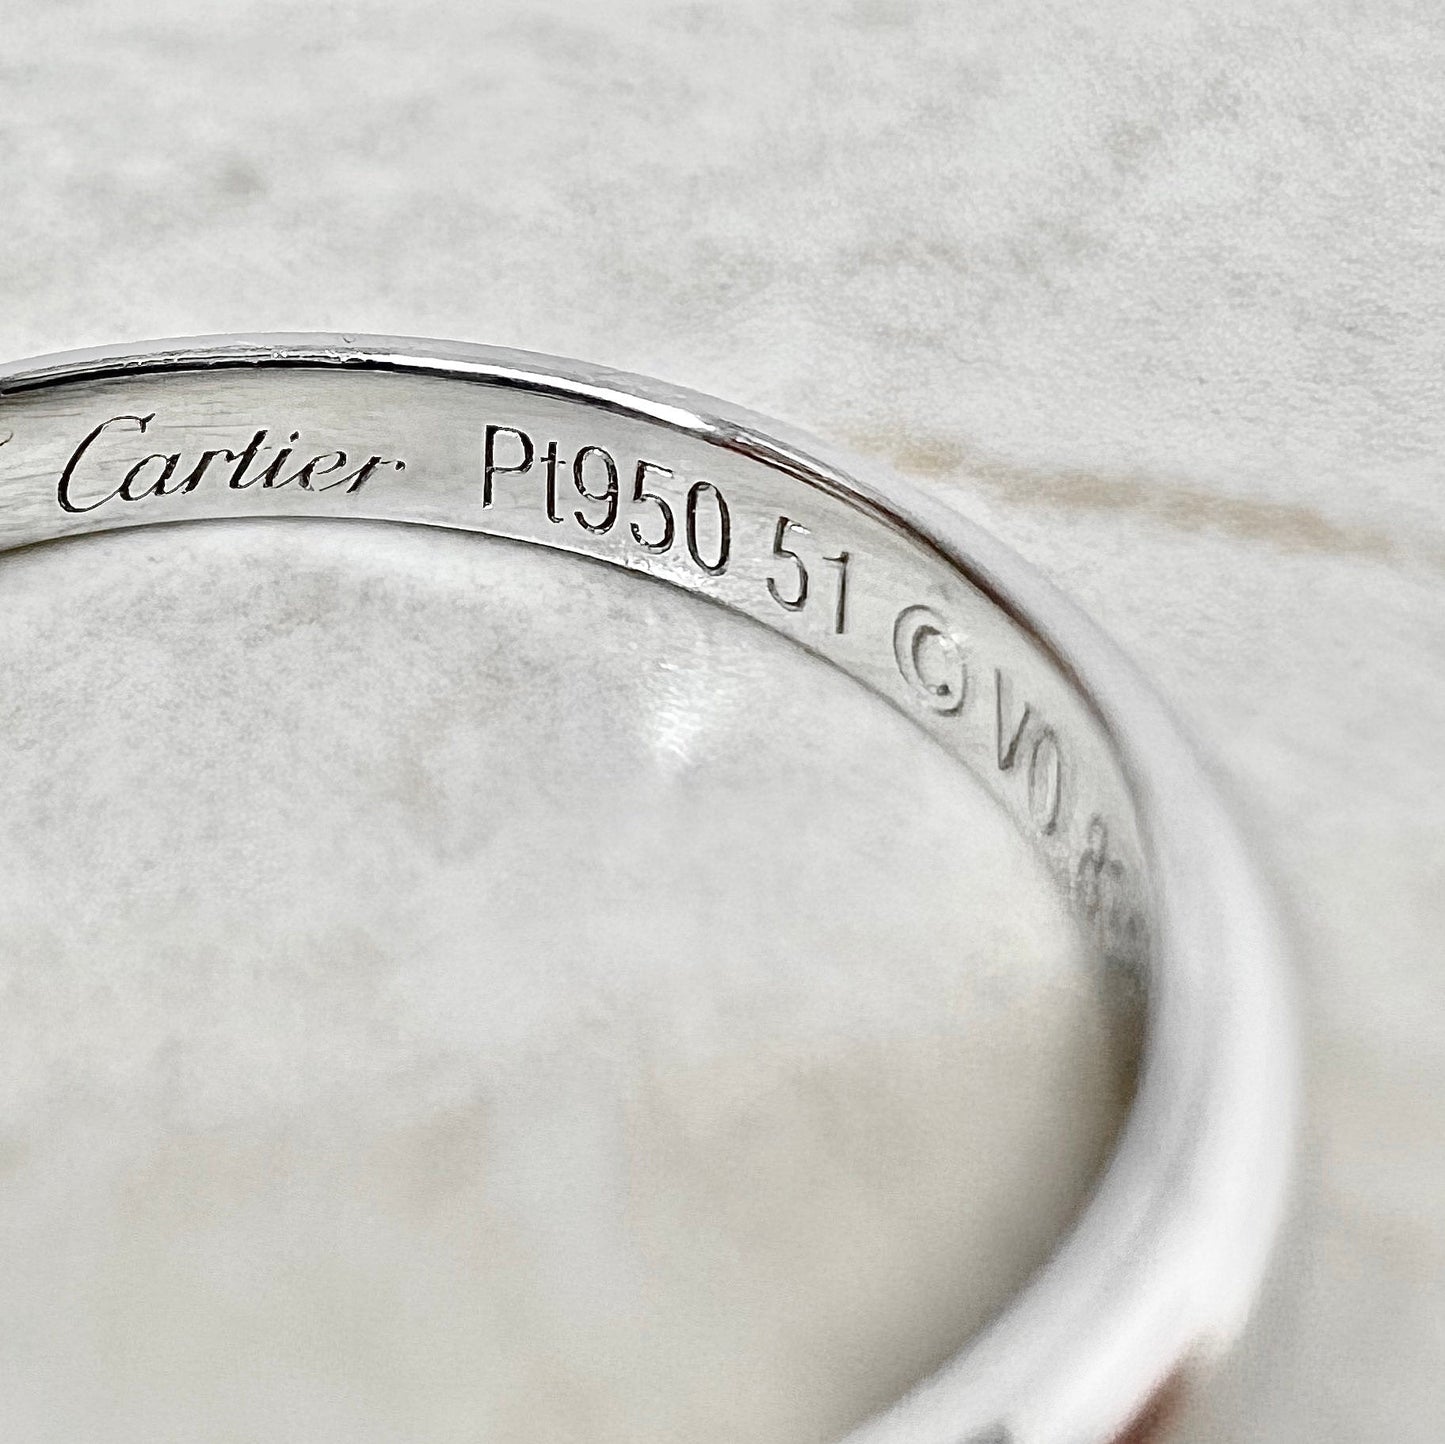 Cartier 1895 Wedding Band 2.5 mm - Platinum Cartier Band Ring - Cartier Wedding Ring - Anniversary Ring - Size 5.75 US / 51 FR